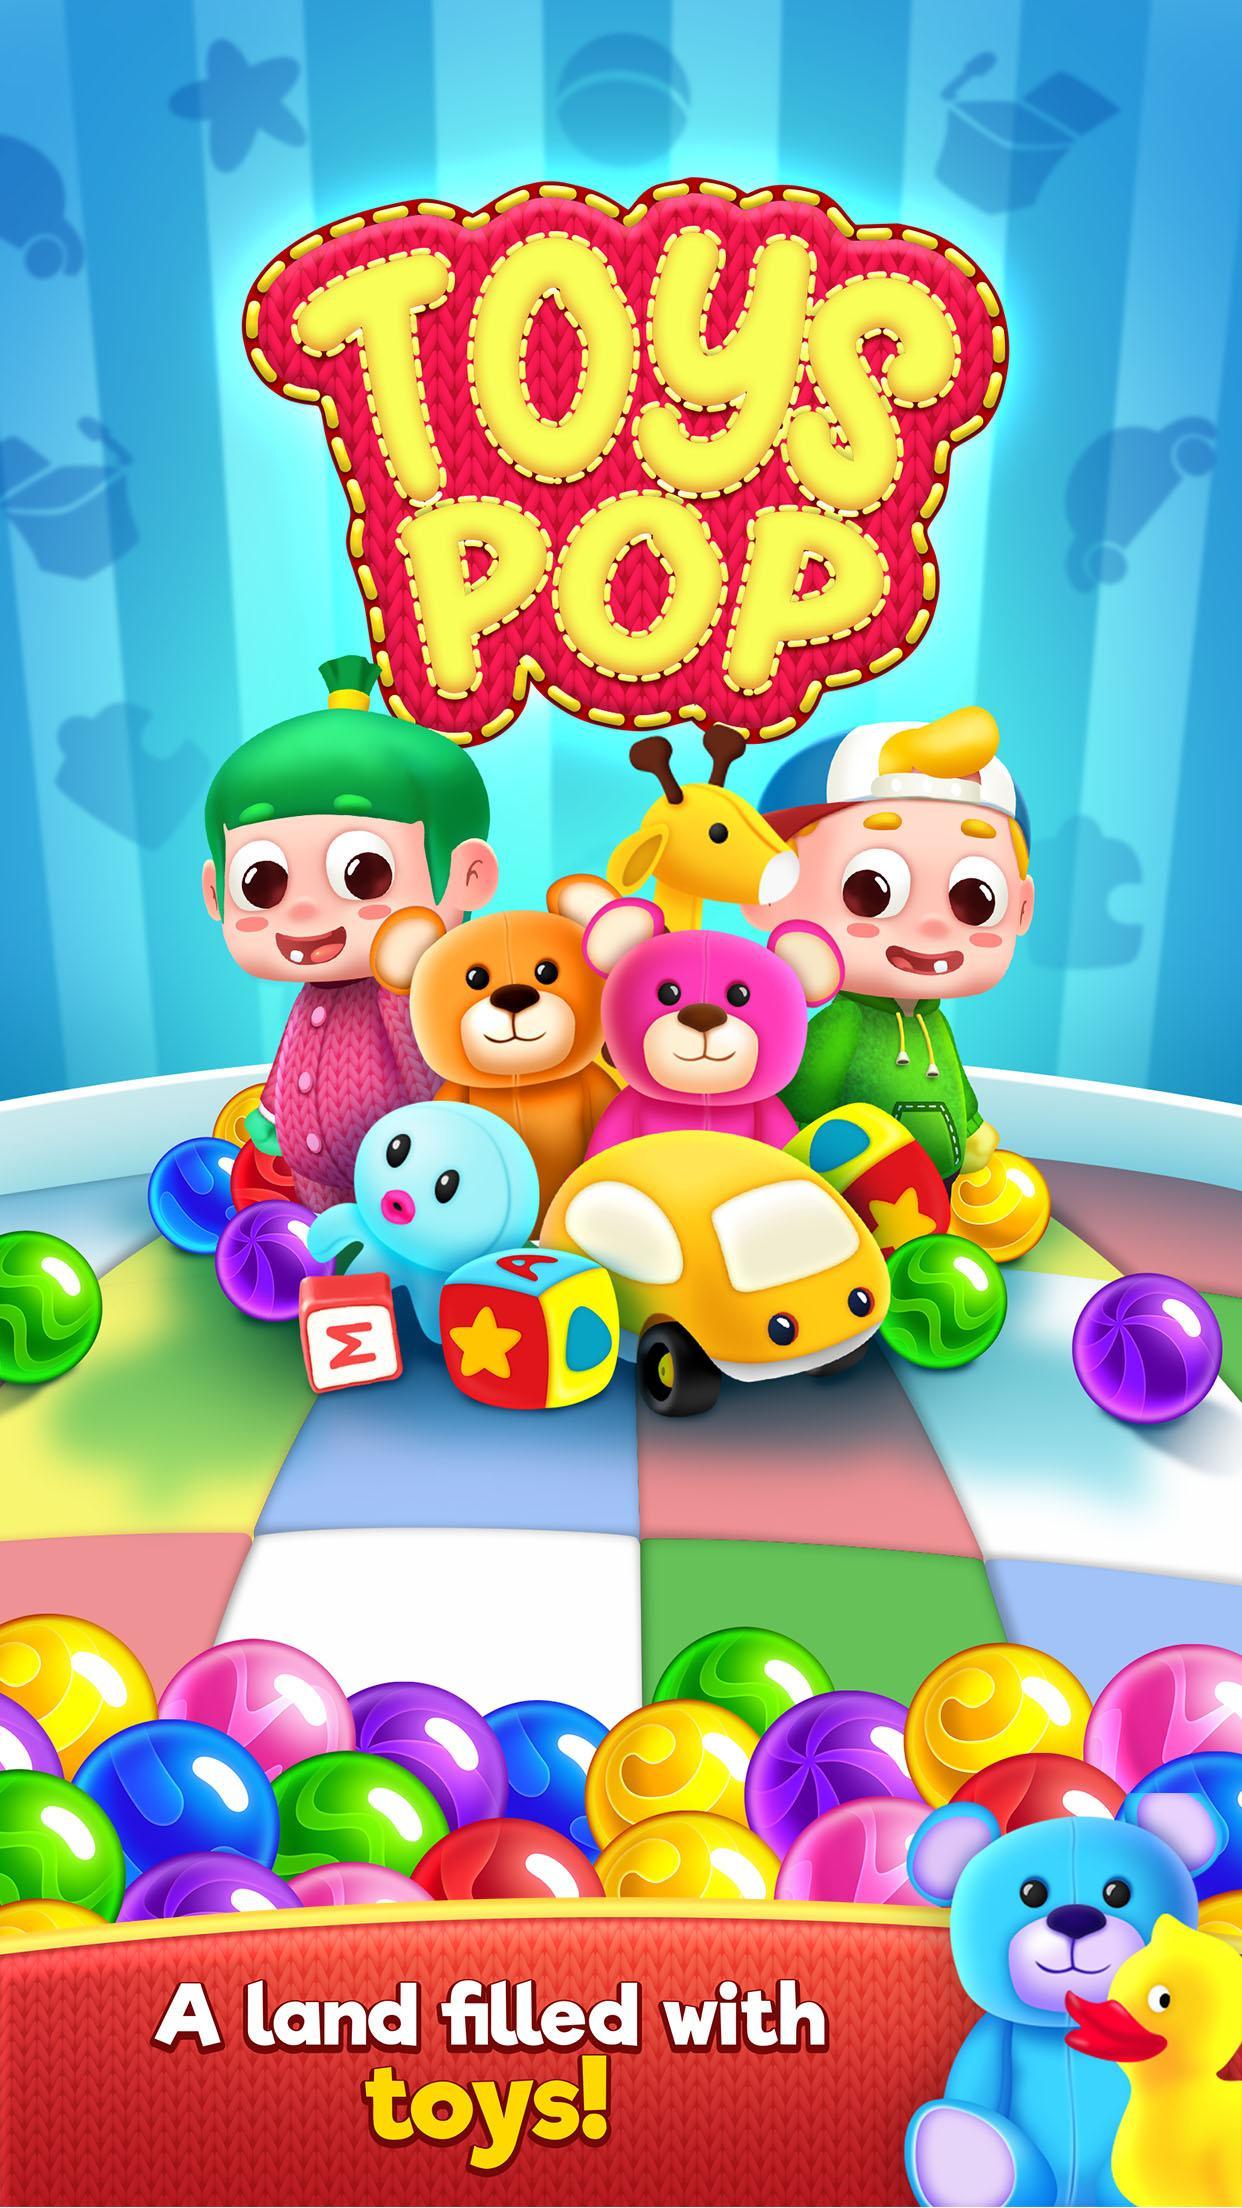 Screenshot 1 of Đồ chơi Pop: Trò chơi bắn bong bóng 2.8